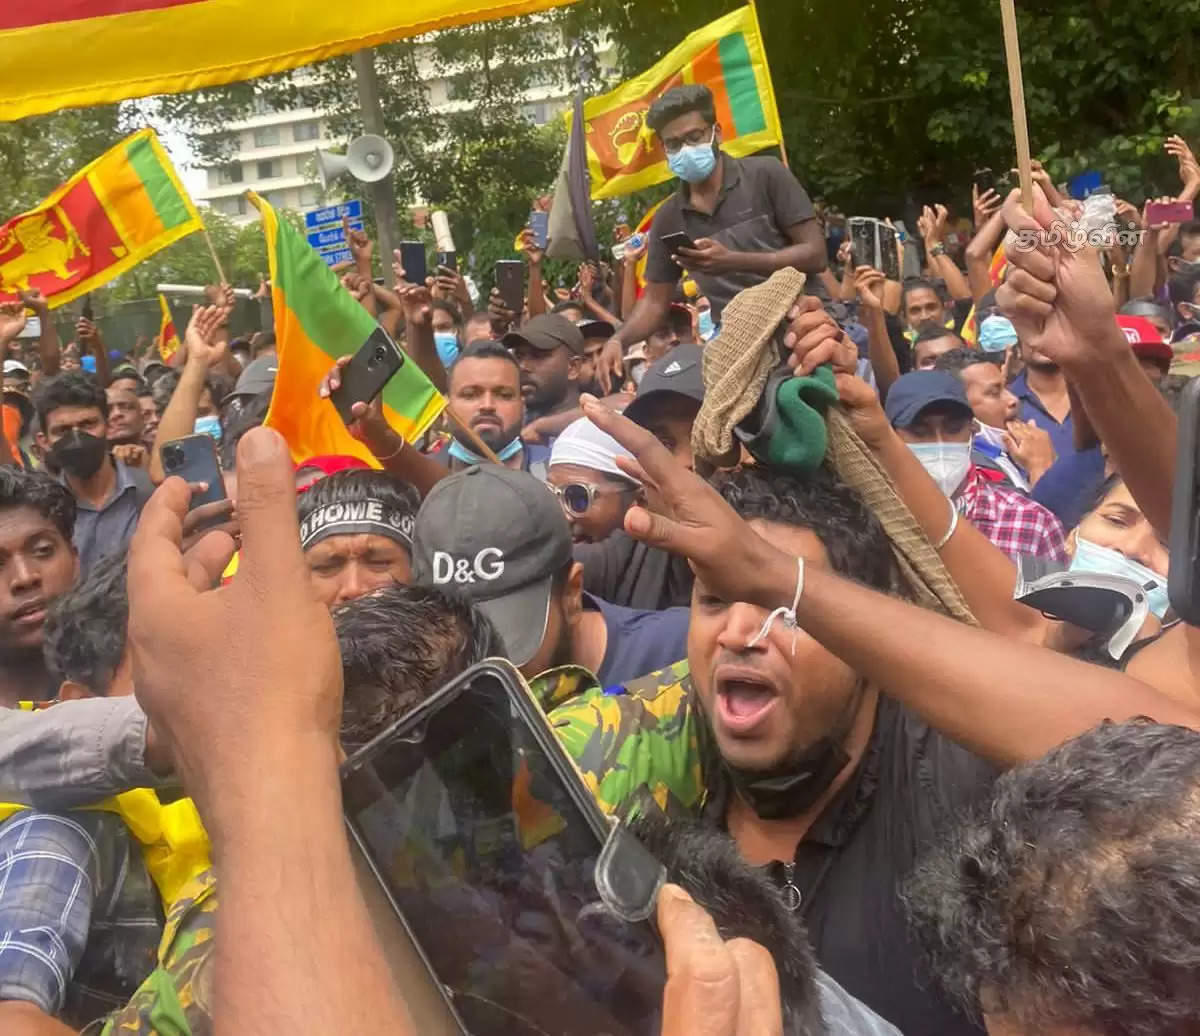 srilanka protest